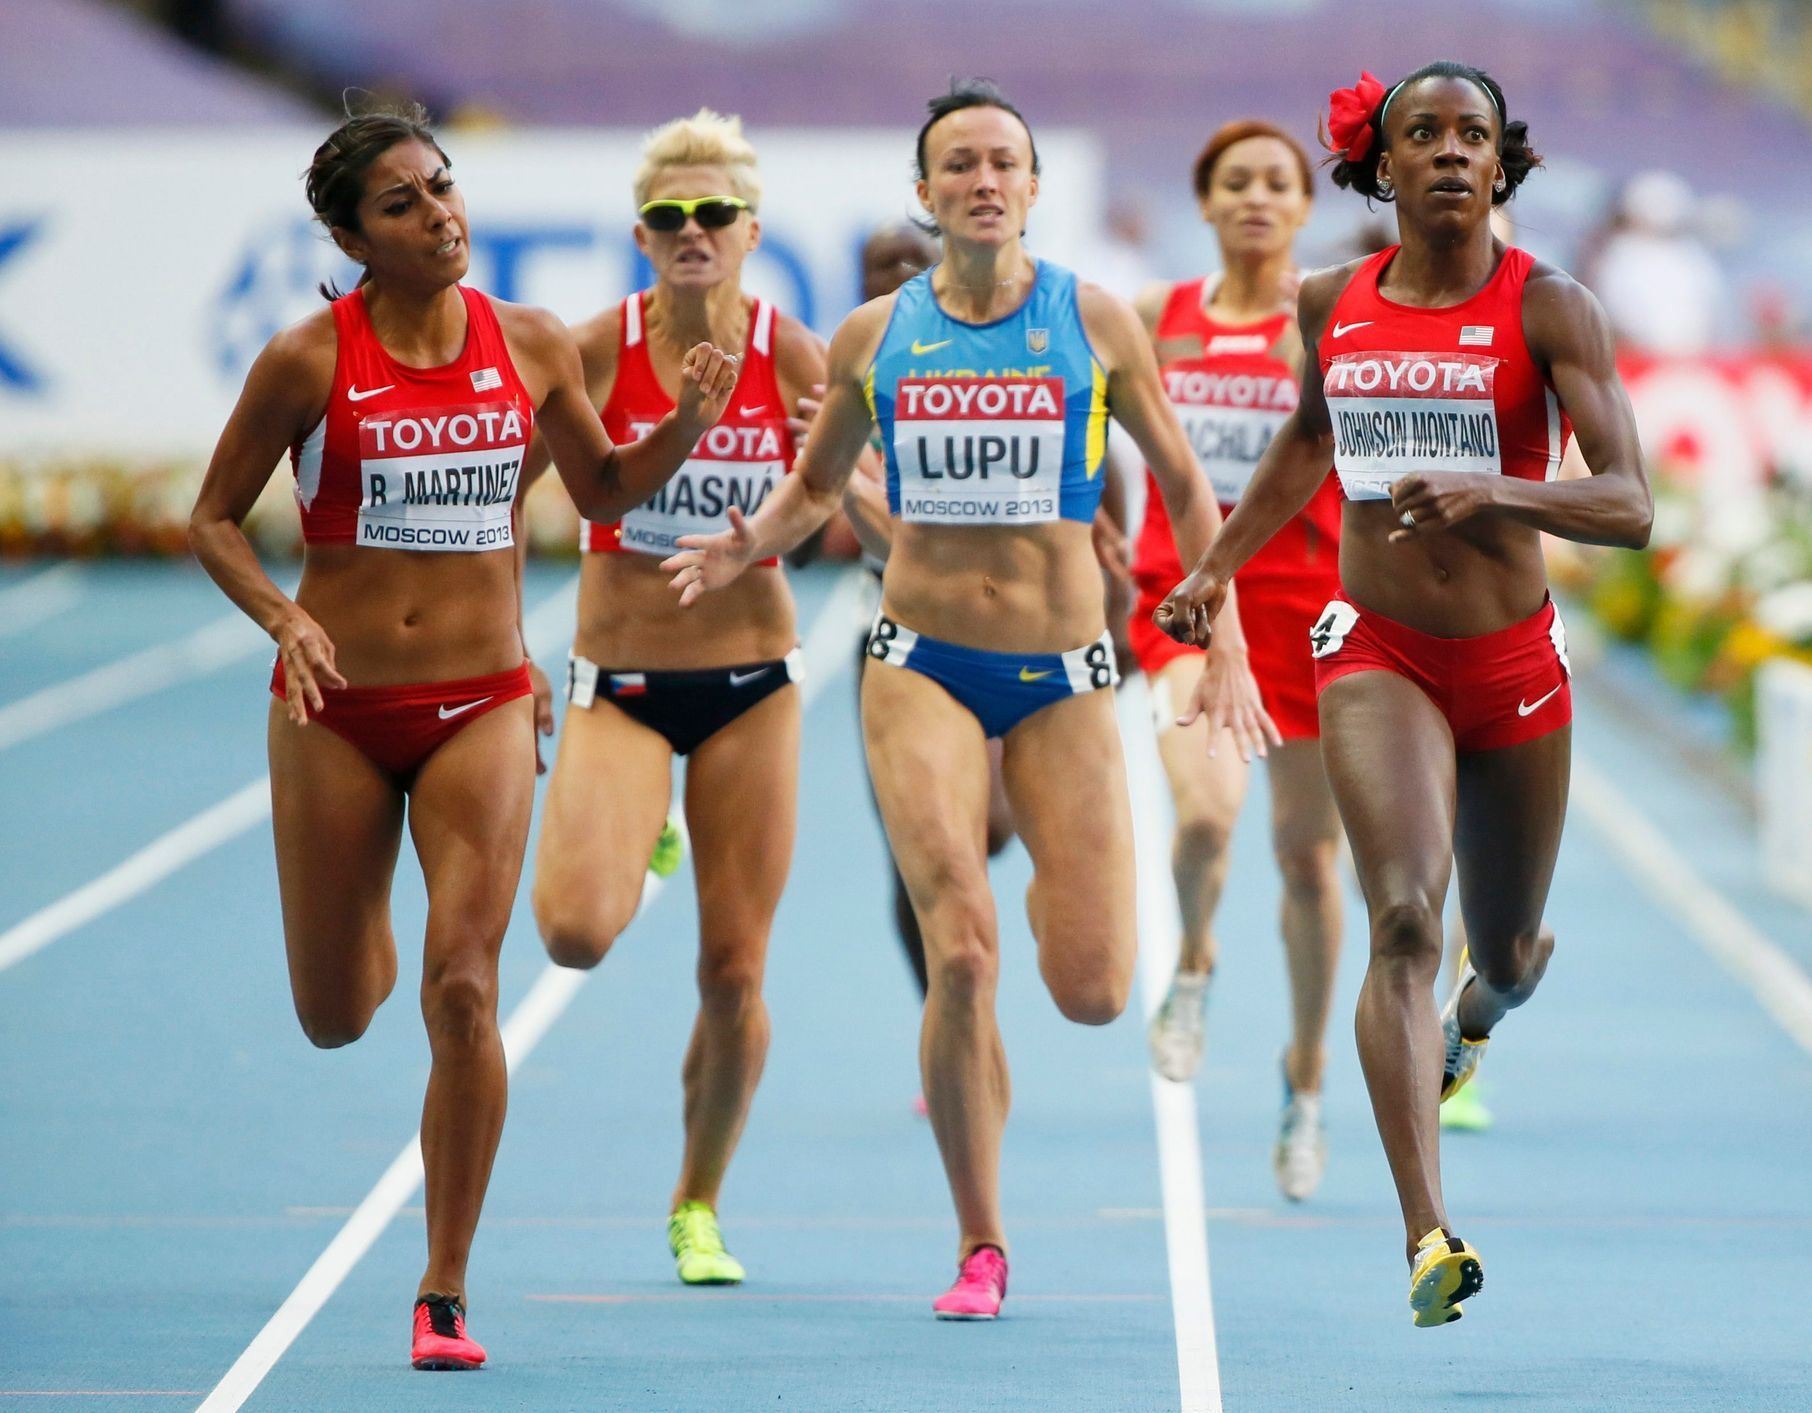 MS v atletice 2013, 800 m žen - semifinále: Brenda Martinezová, Lenka Masná,  Nataliia Lupuová, Halima Hachlafová a Alysia Johnson Montanová